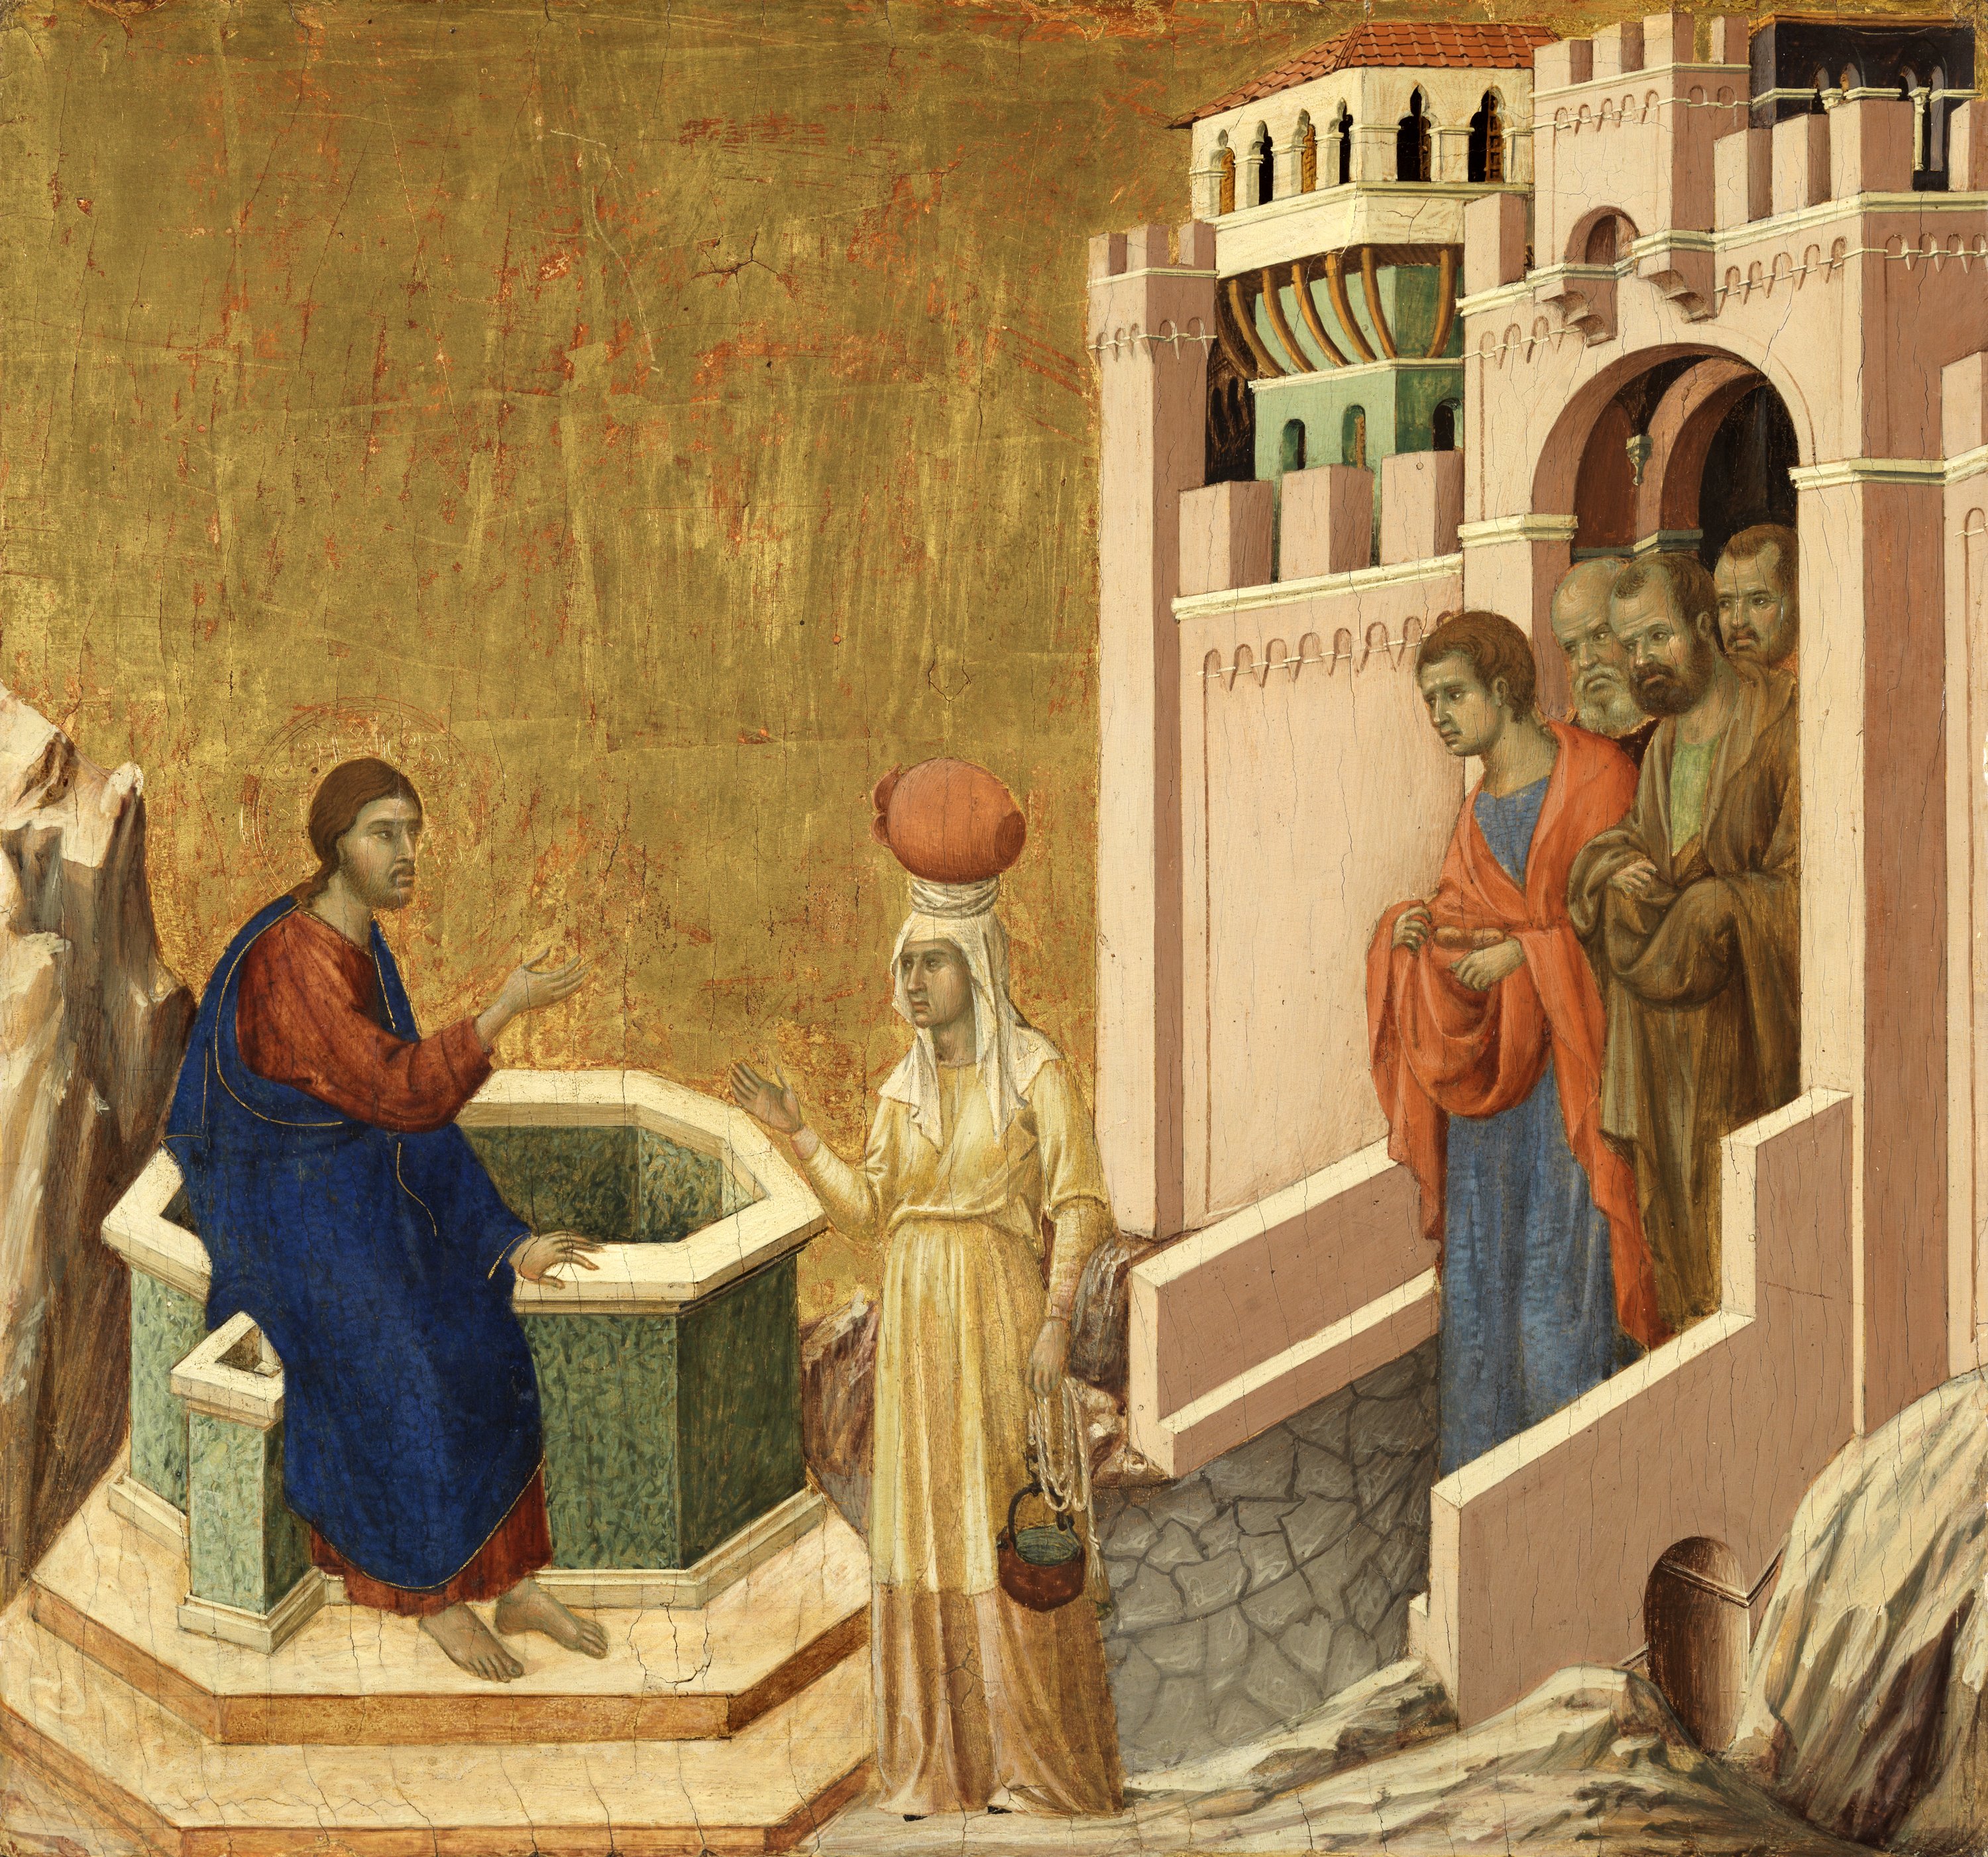 Cristo y la samaritana. Duccio DI BUONINSEGNA